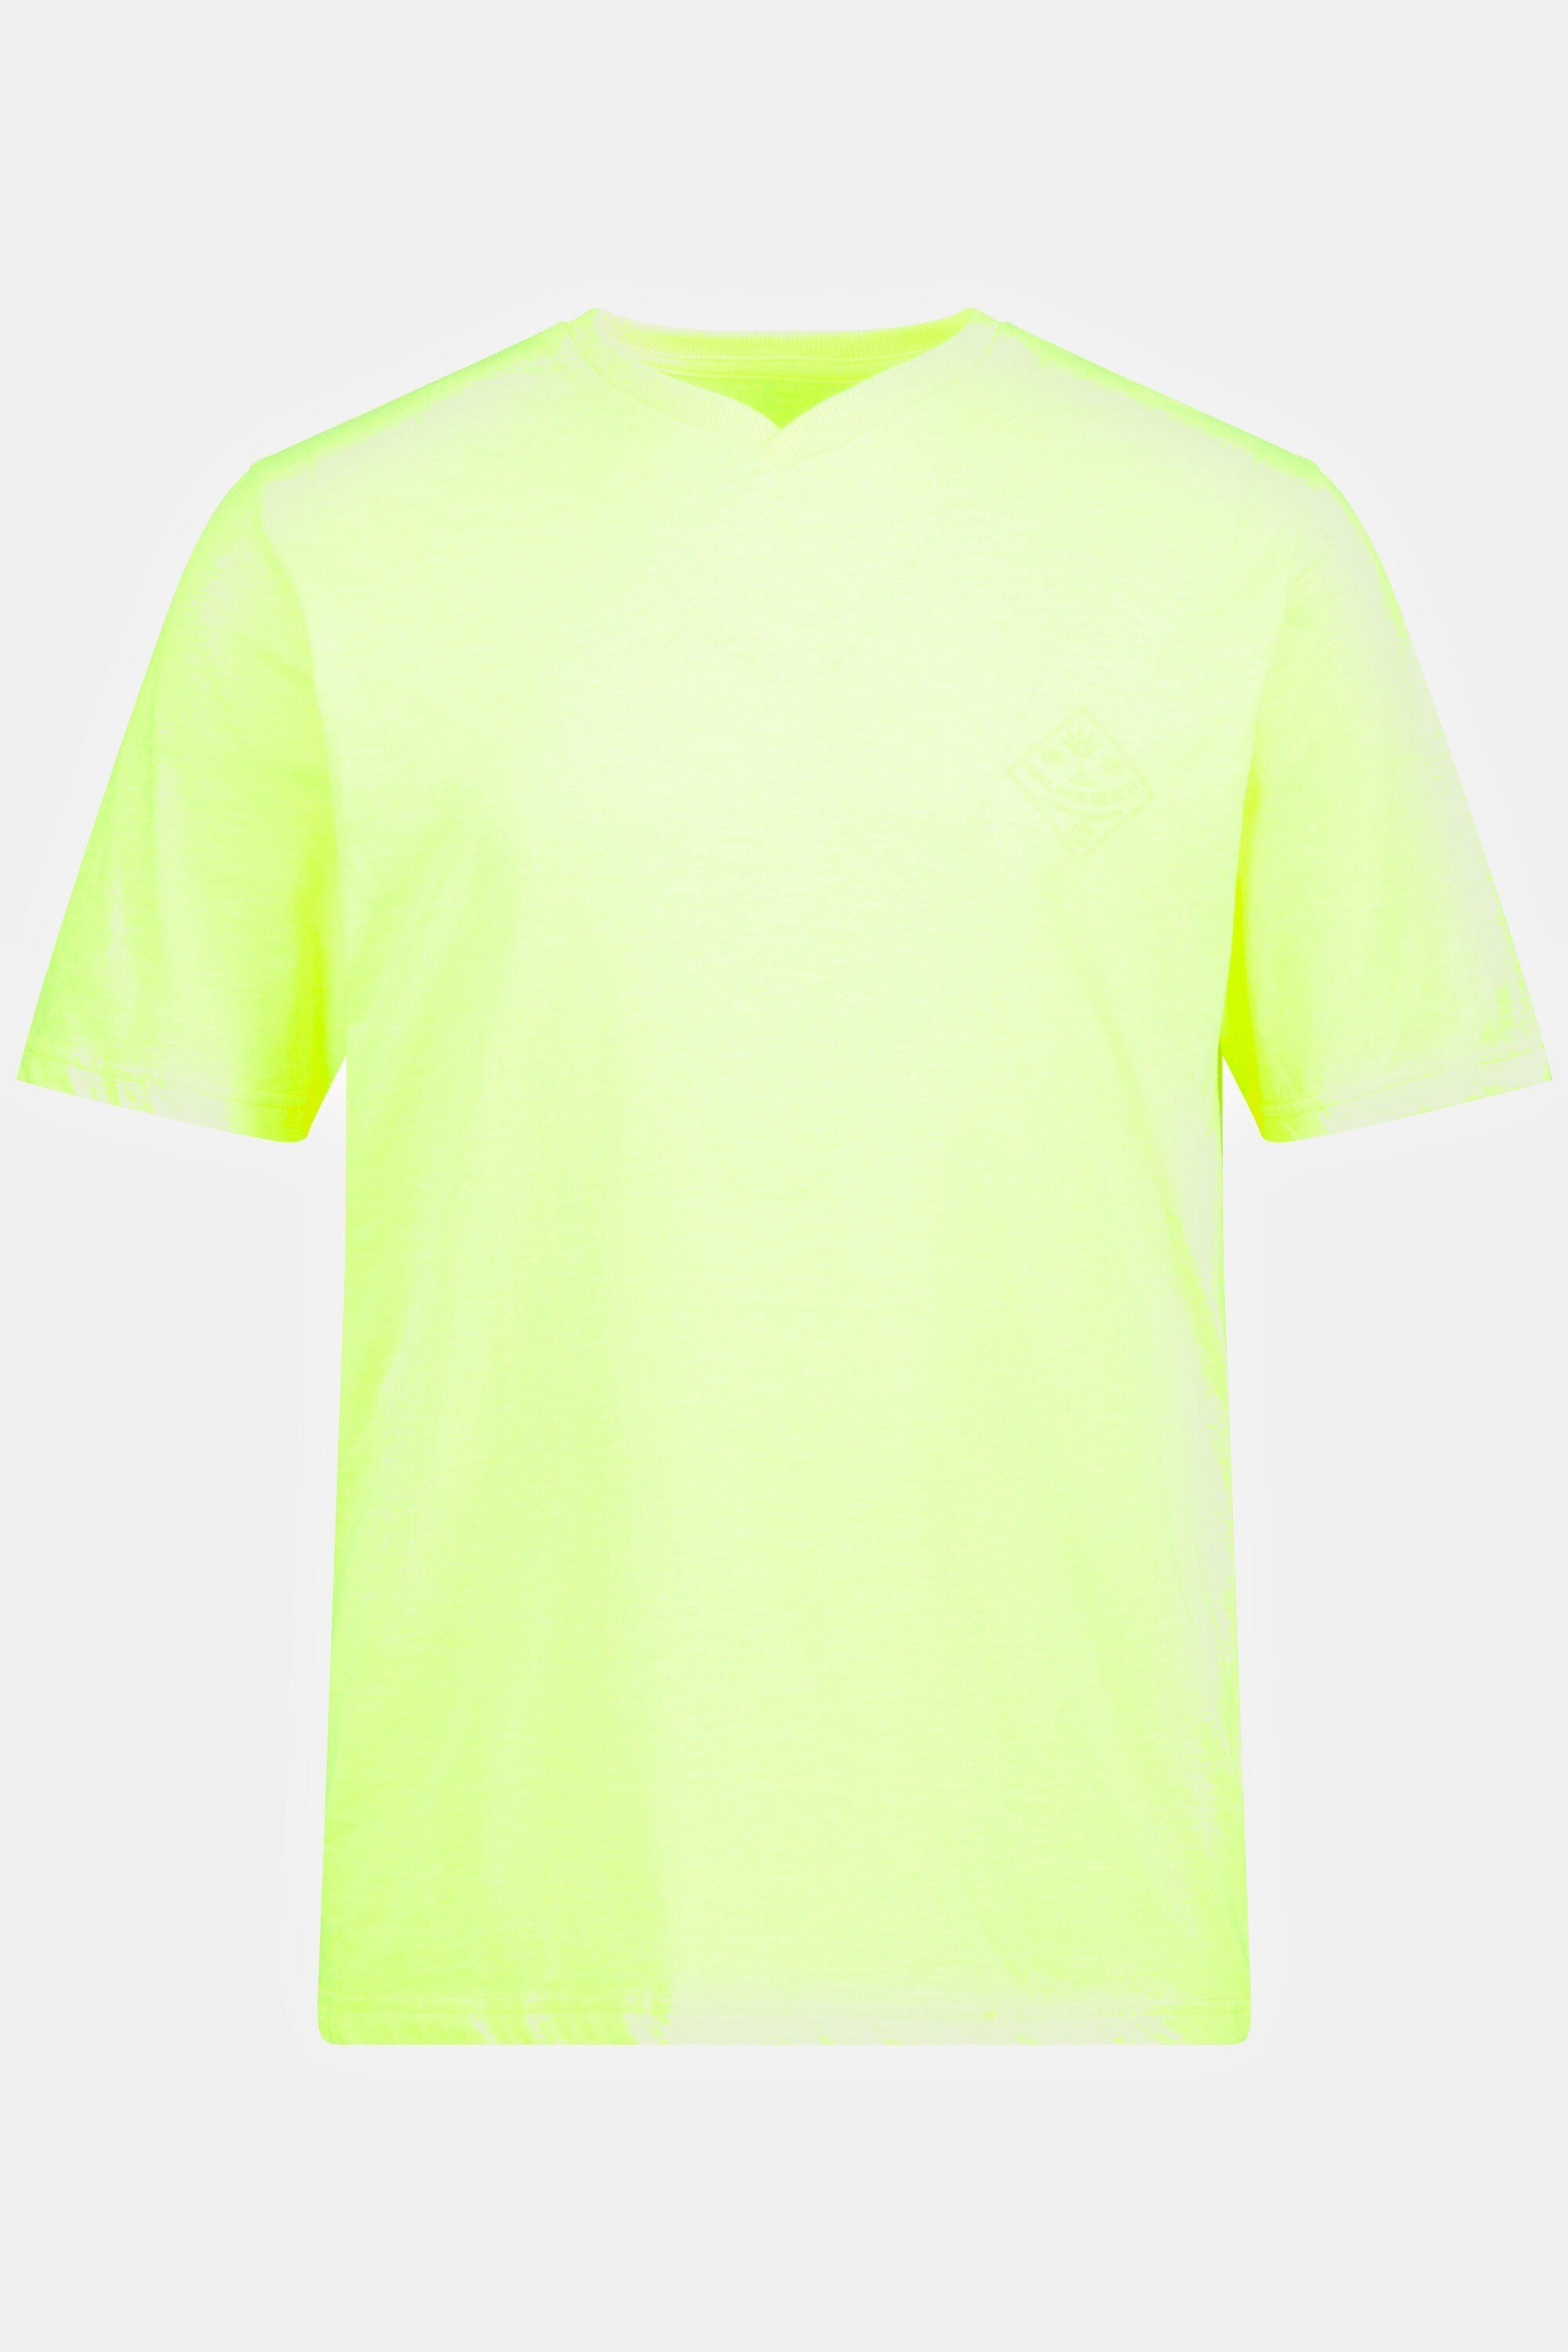 JP1880 T-Shirt T-Shirt Halbarm V-Ausschnitt gelb neon